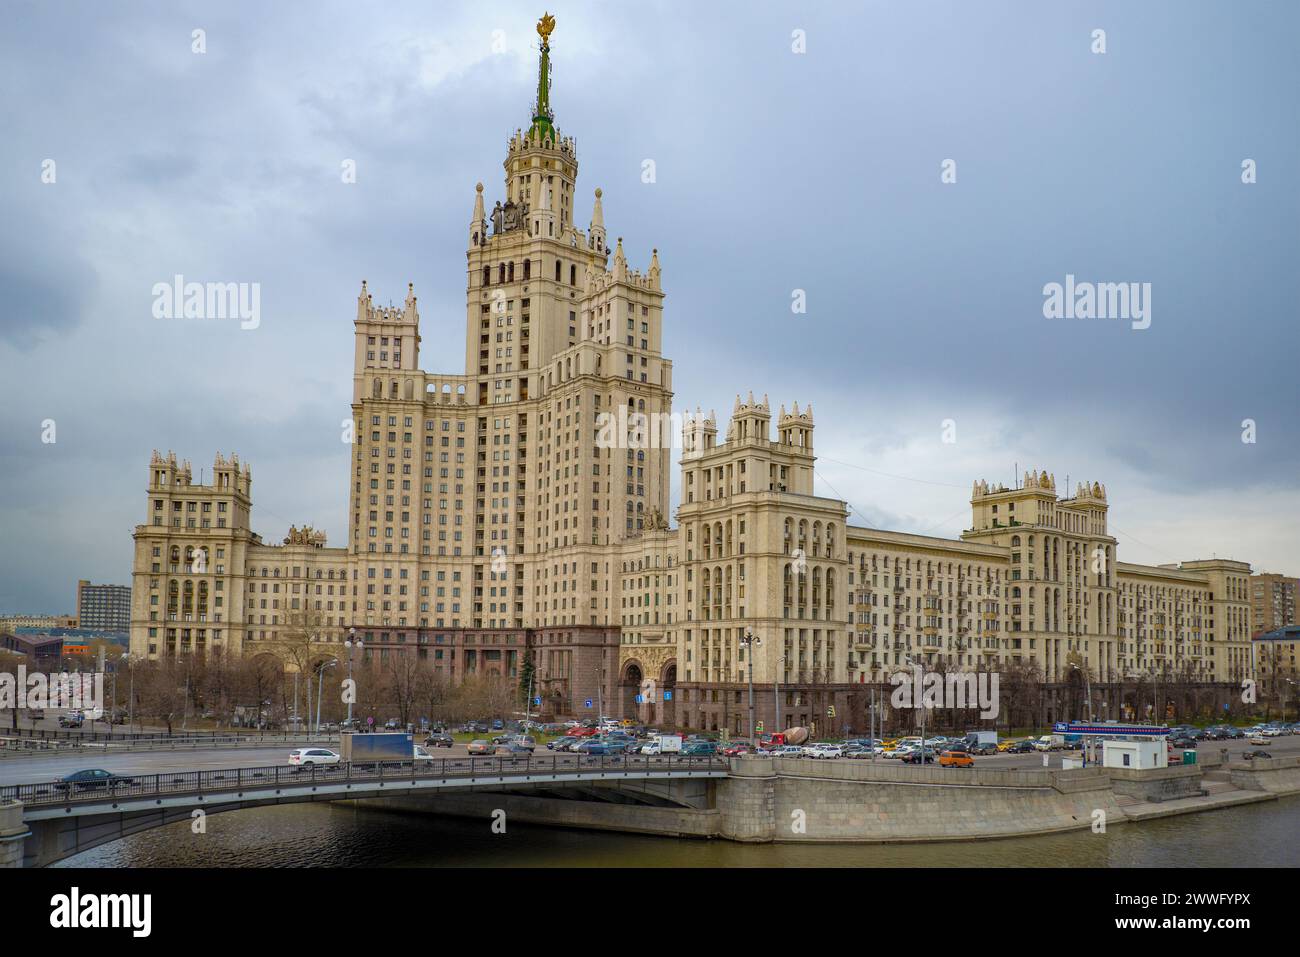 MOSKAU, RUSSLAND - 15. APRIL 2015: Blick auf das stalinistische Hochhaus am Ufer von Kotelnicheskaya an einem bewölkten Aprilabend Stockfoto